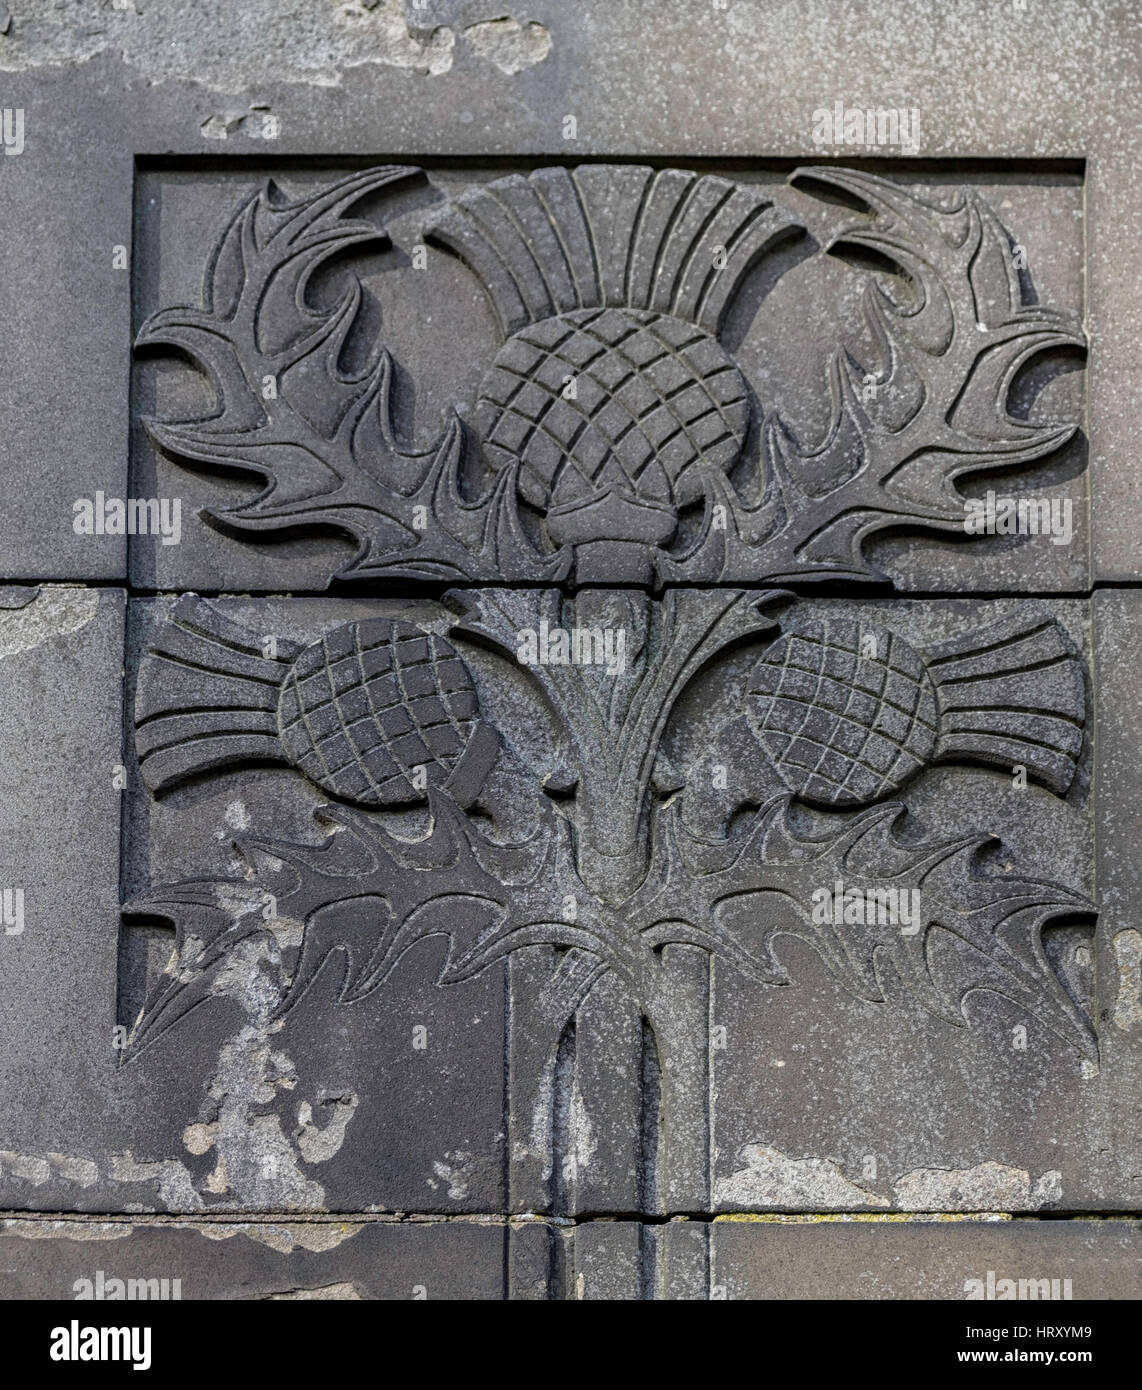 L'emblème de l'Écosse, le thistle flower, sculptées en pierre grise Banque D'Images